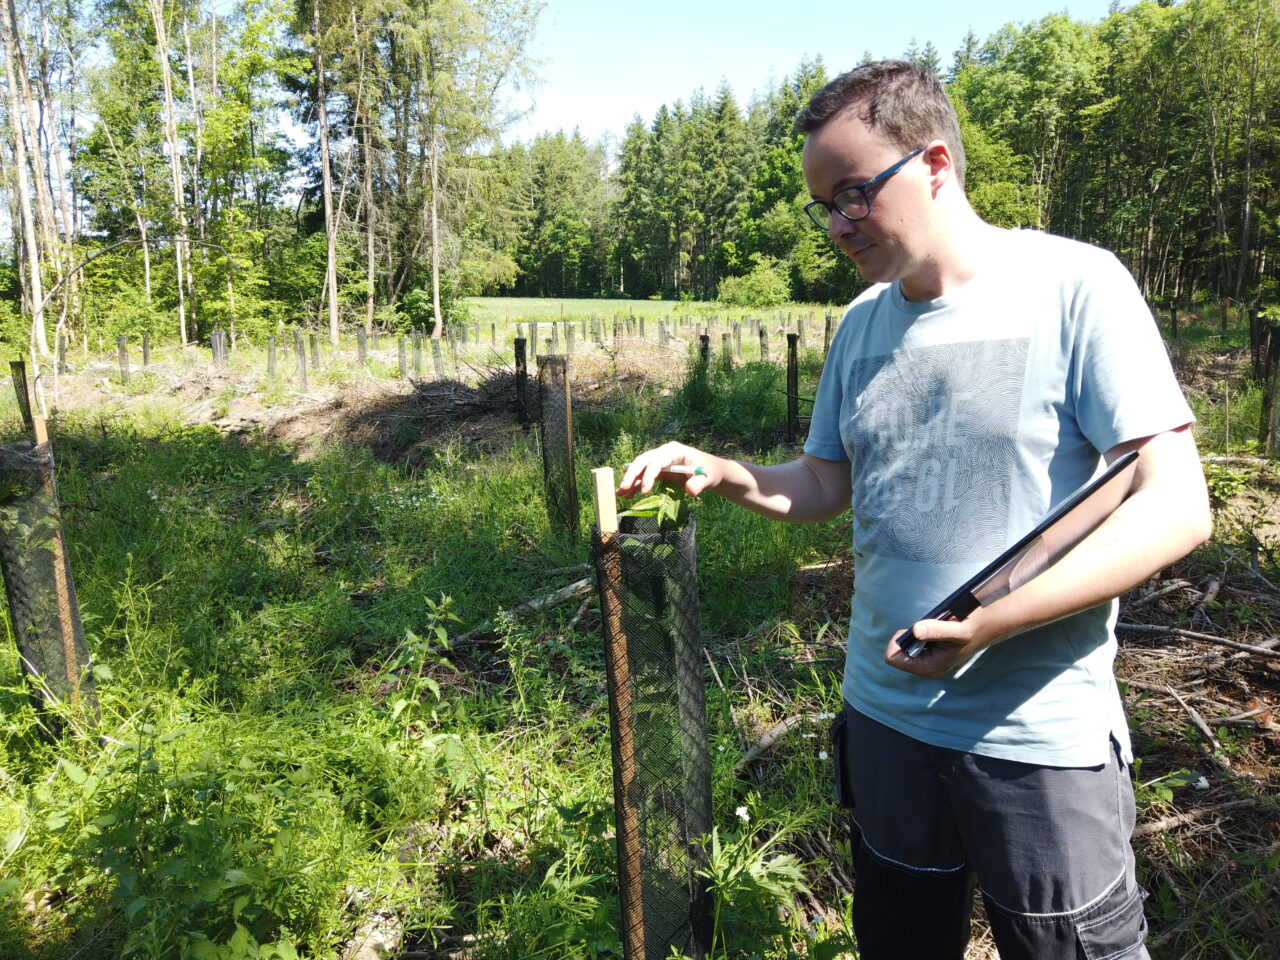 Lucas Gossiaux, Ingénieur agronome  vérifie une plantation en forêt menée par PlantC.
Planter pour le climat et la biodiversité en Belgique